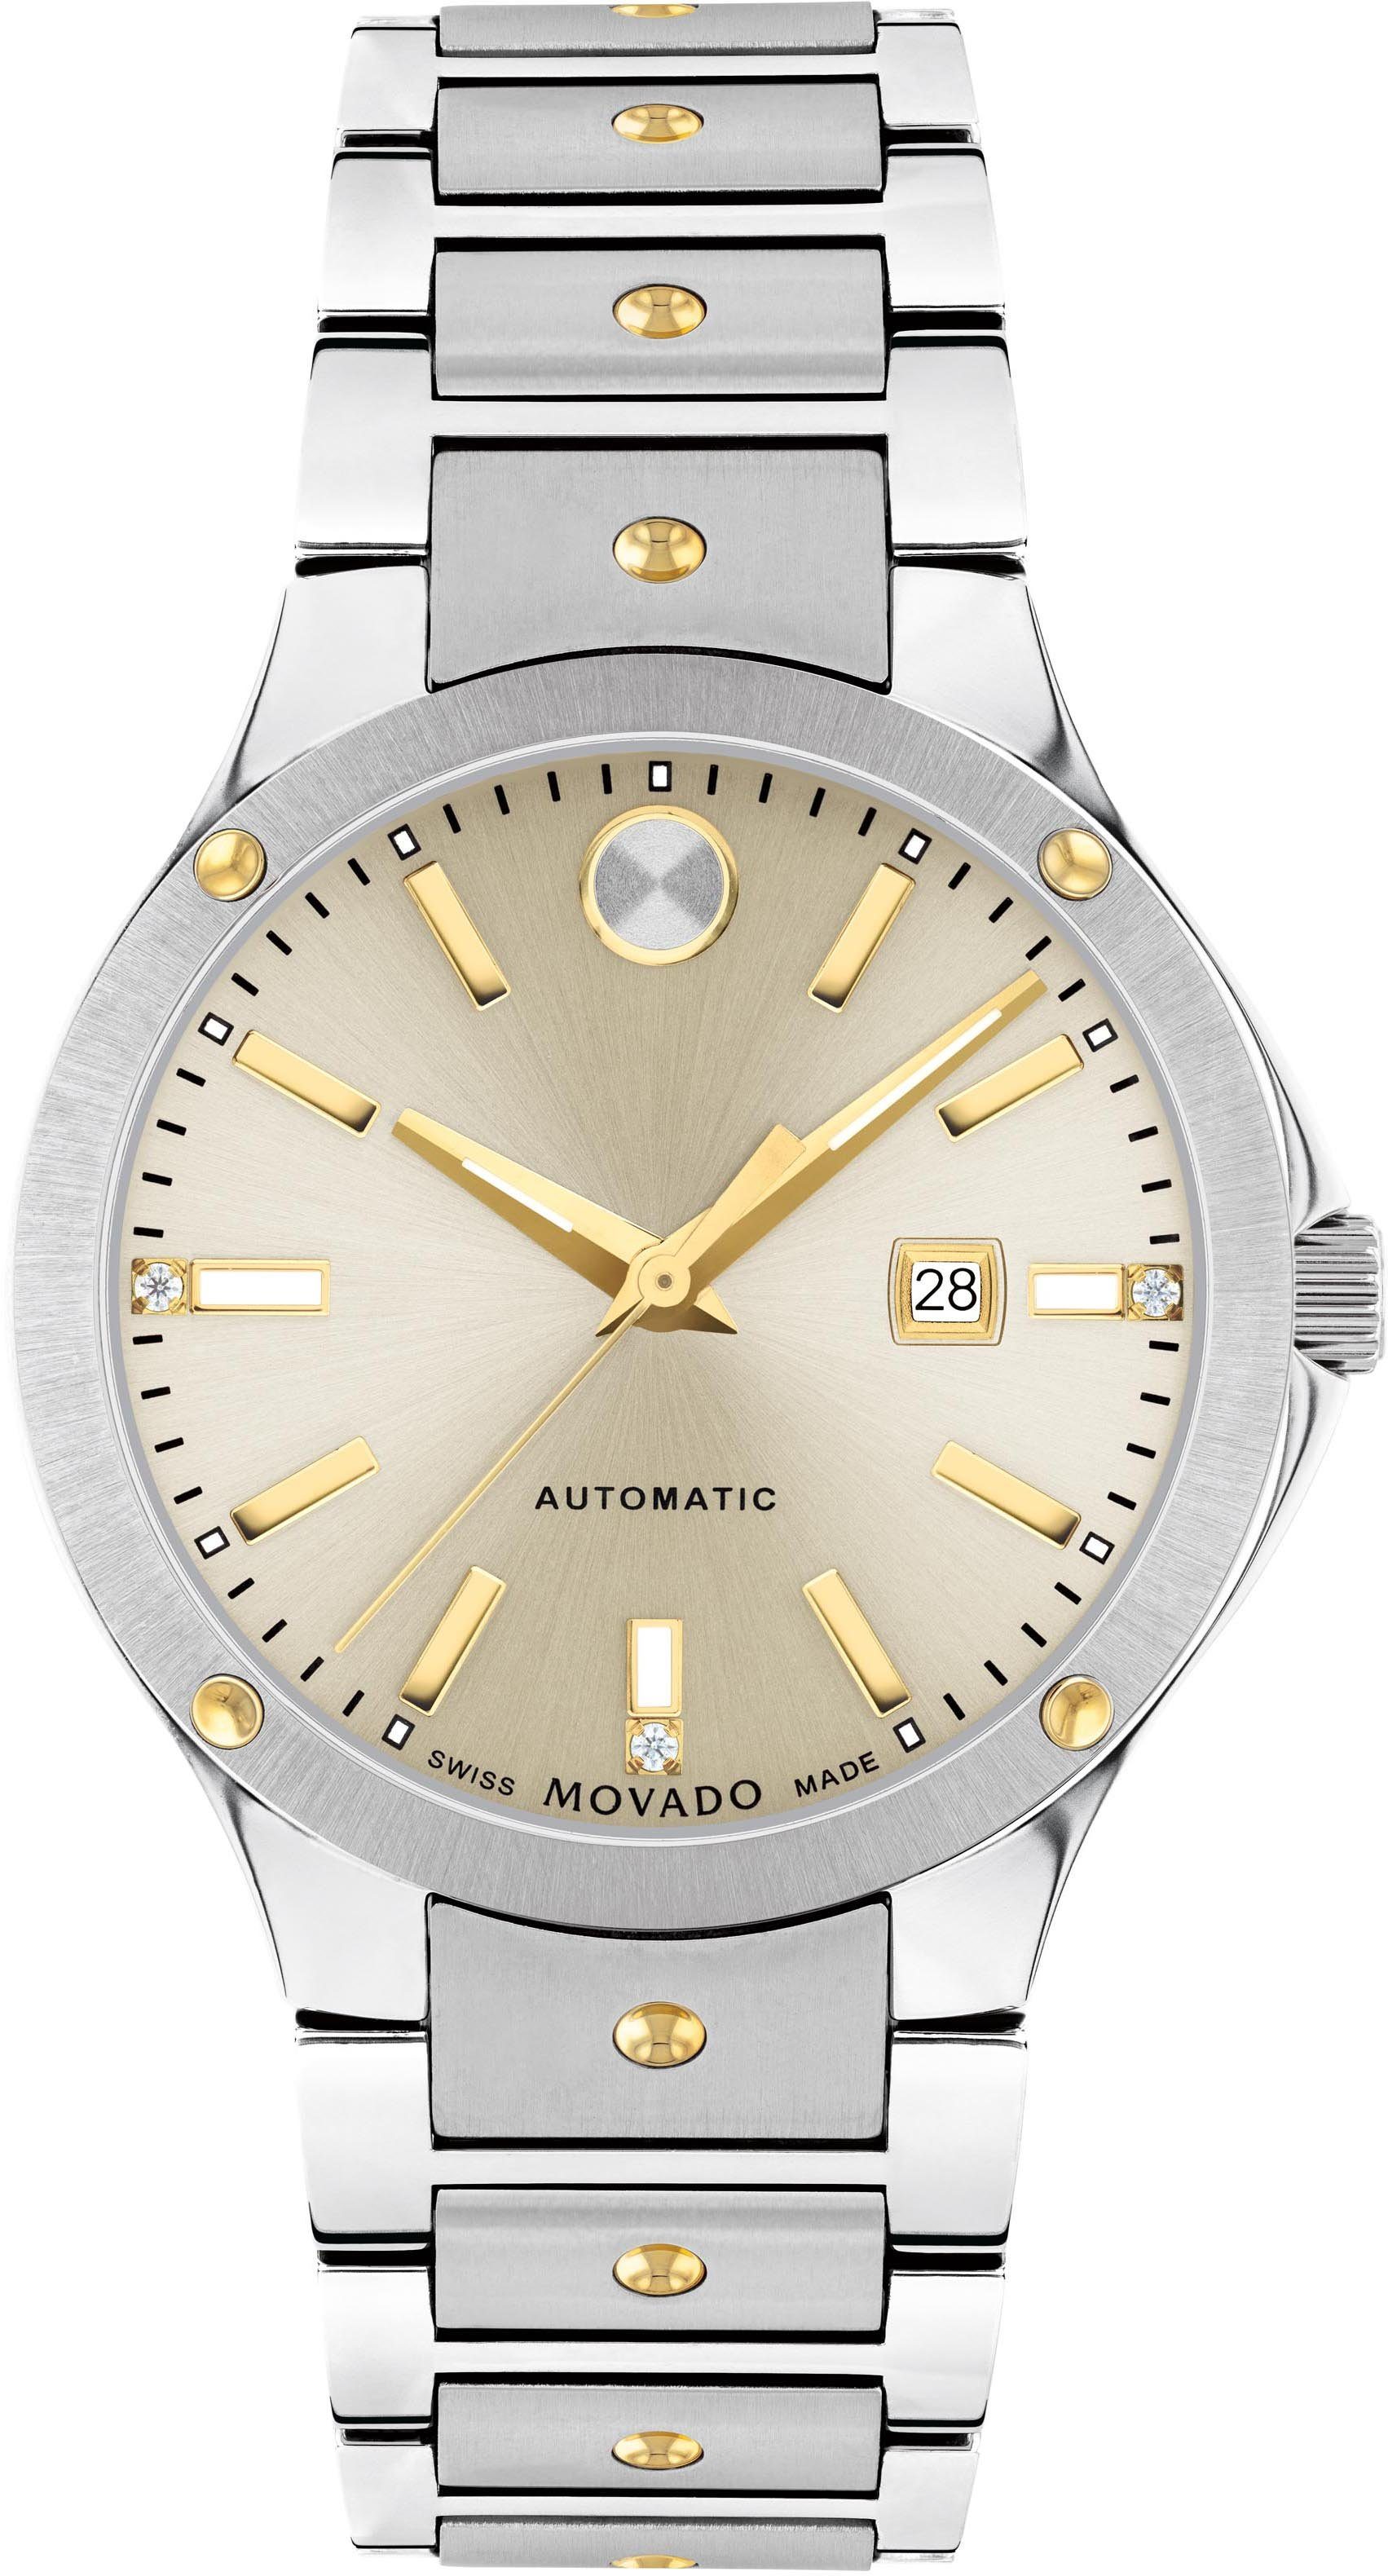 MOVADO Automatikuhr SE Automatic, 0607682, Armbanduhr, Damenuhr, mechanische Uhr, Swiss Made, Diamant-Steine